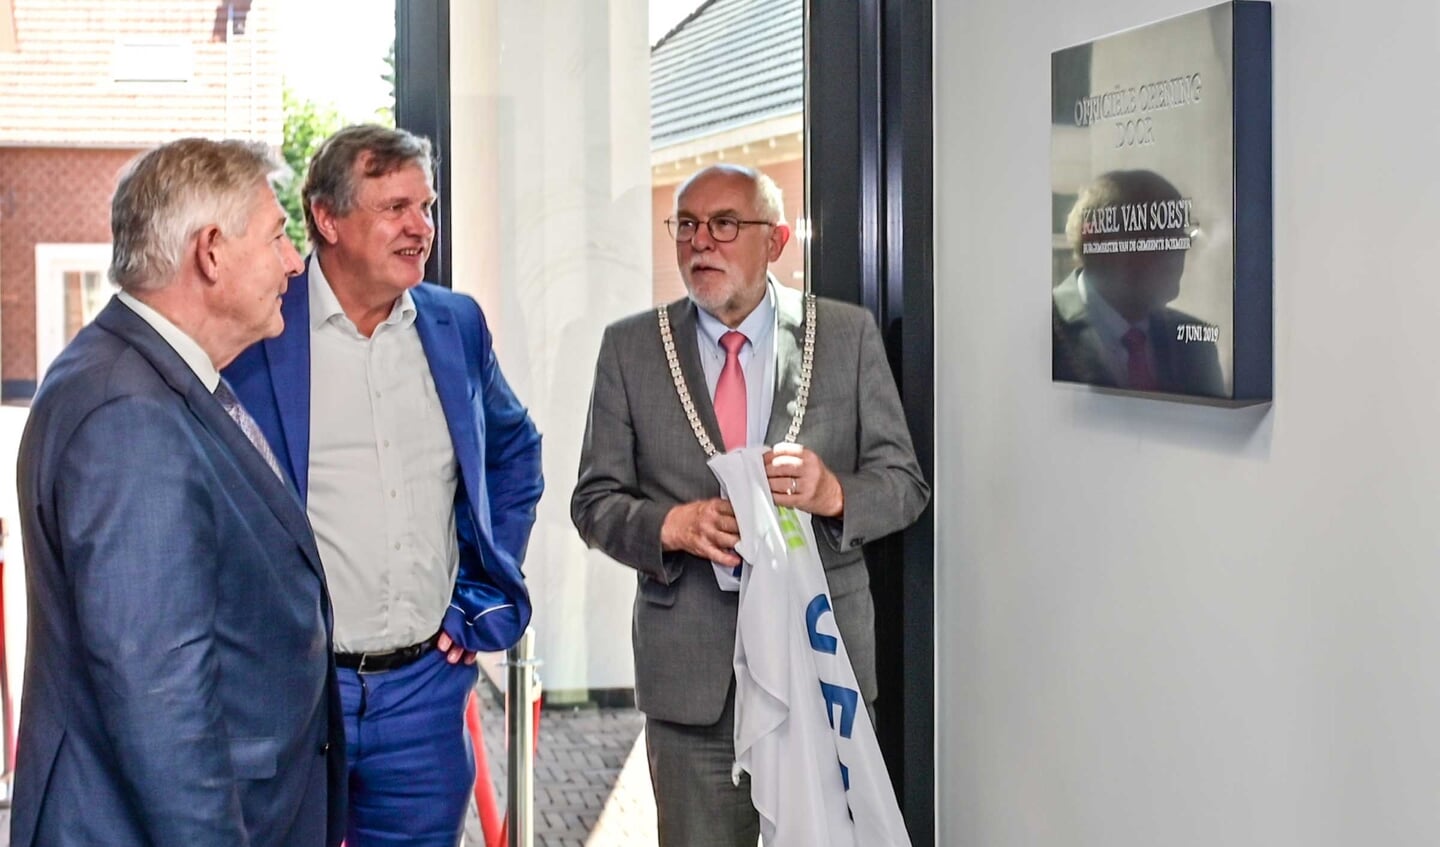 V.l.n.r.: Thijs Hendrix, Antoon van den Berg en burgemeester Karel van Soest bij de plaquette ter gelegenheid van de opening.